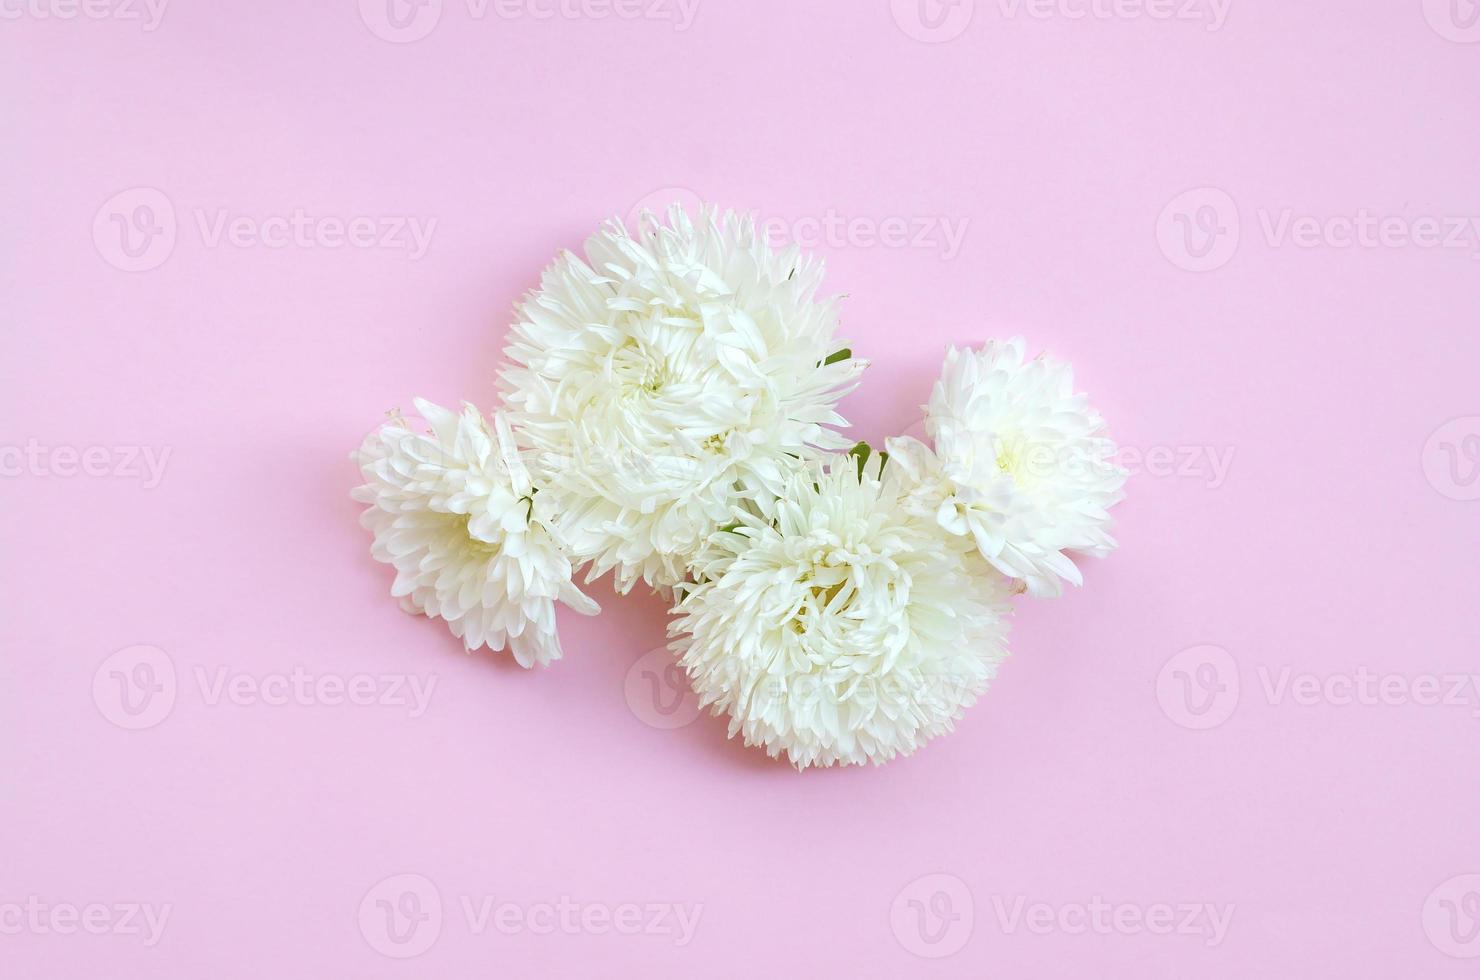 flores de crisantemo blanco sobre fondo rosa pastel vista superior foto